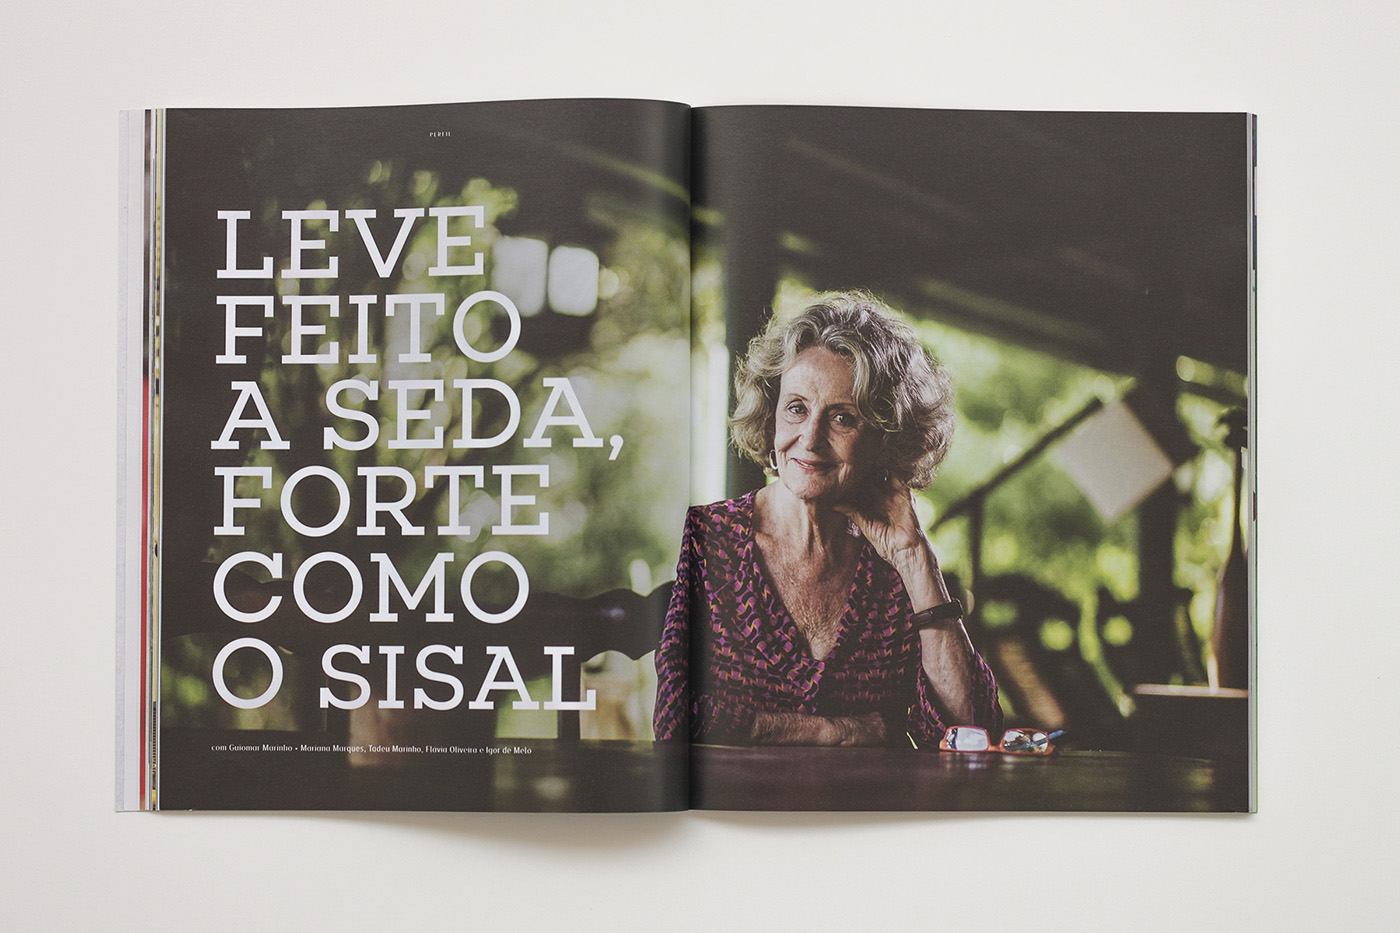 Adobe Portfolio magazine Vos revista ceará Brazil pages InDesign Layout